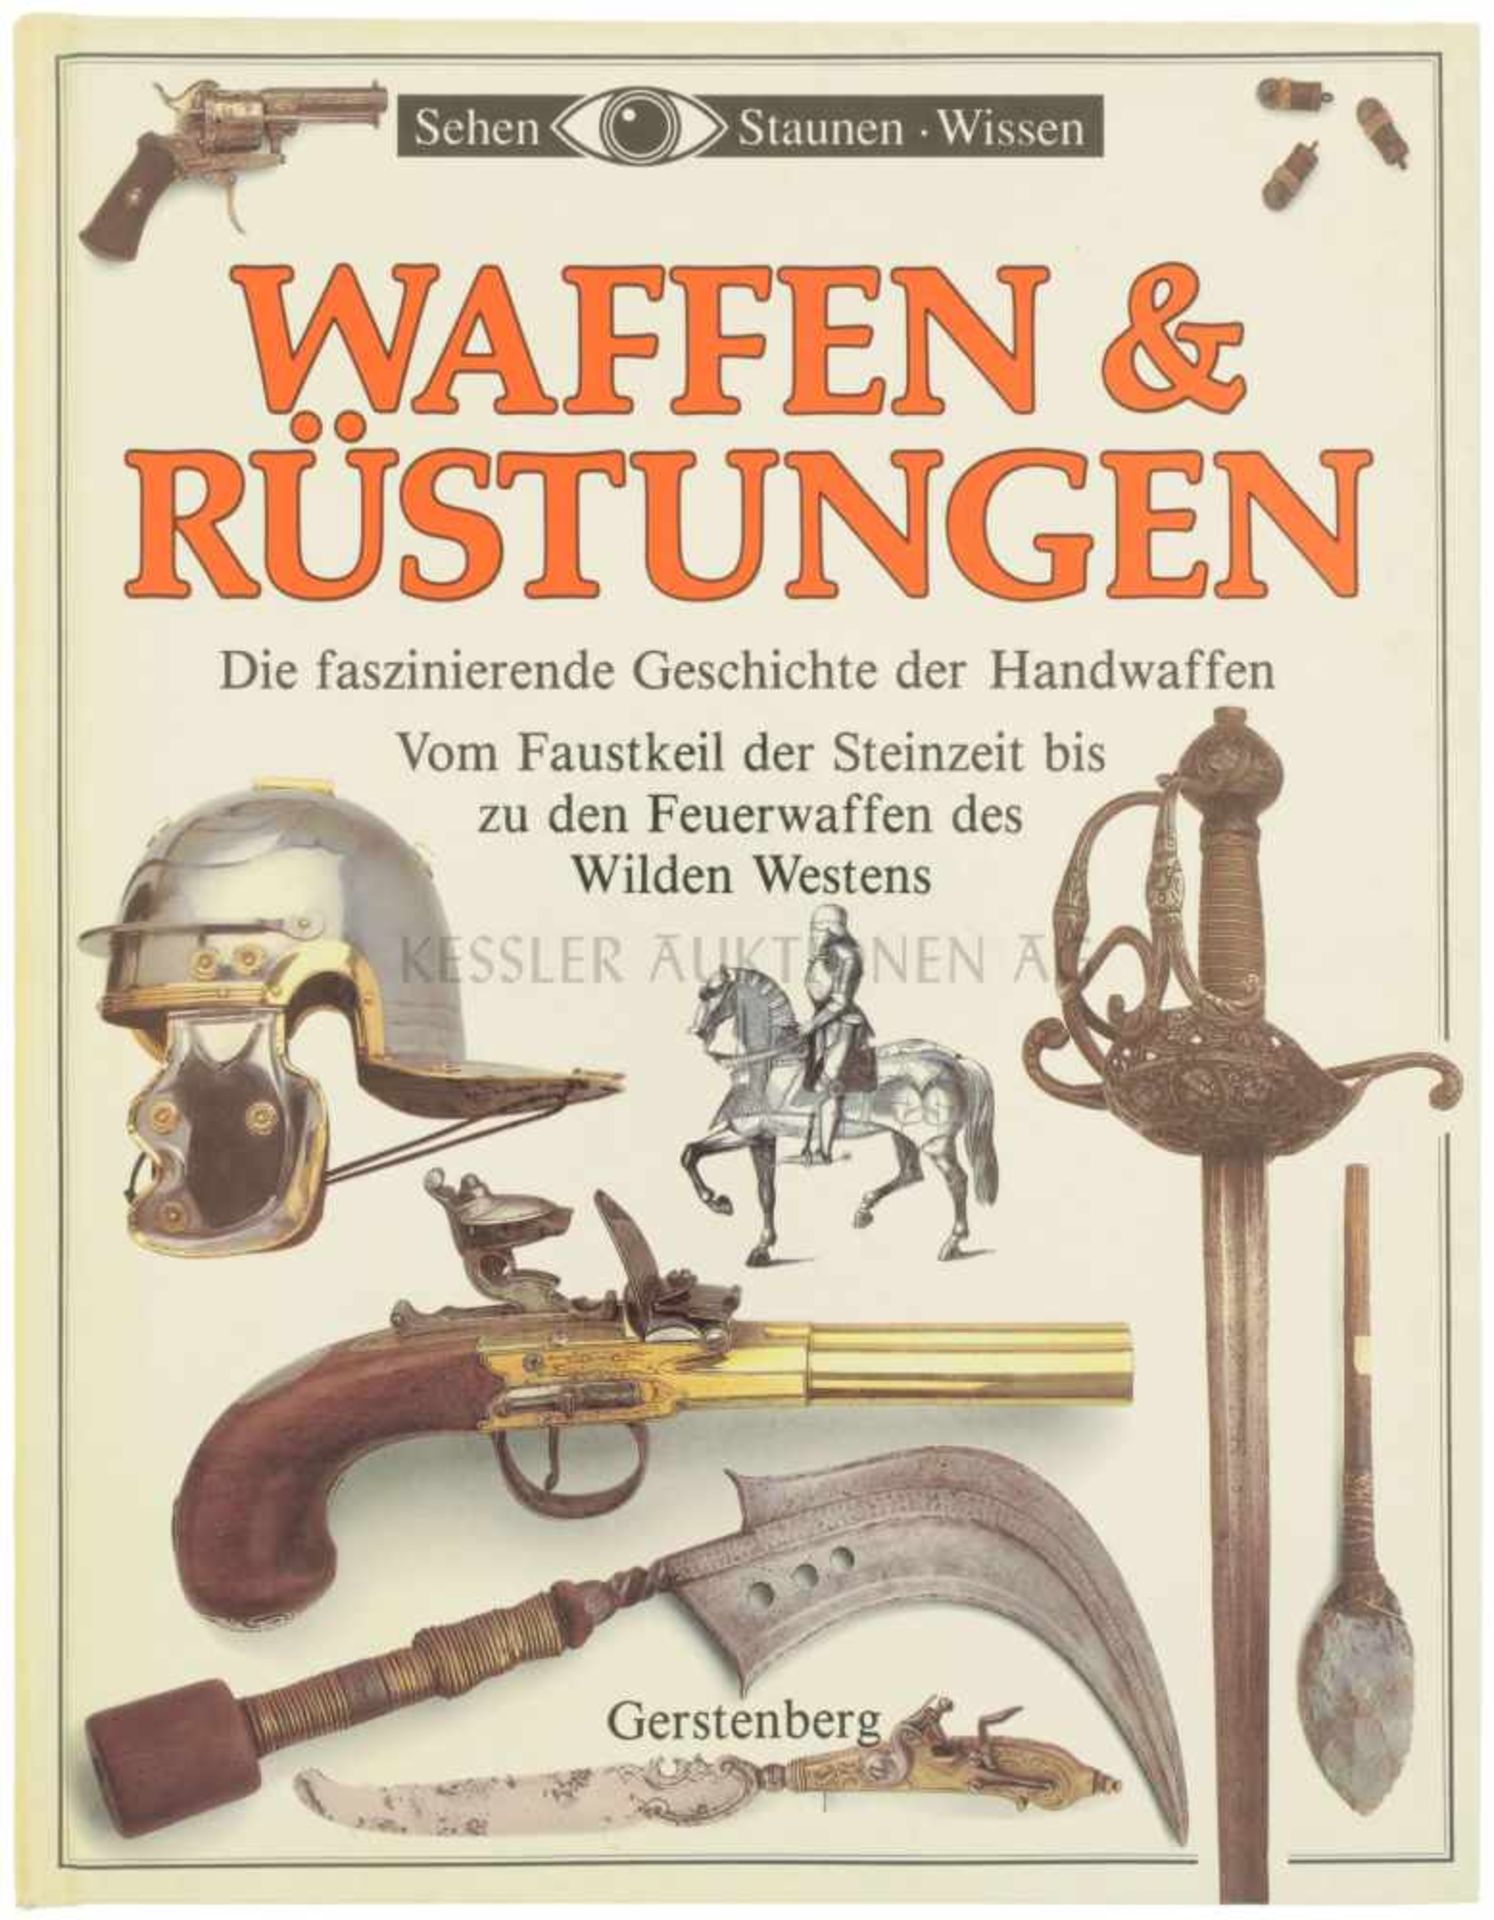 Waffen & Rüstungen, Die faszinierende Geschichte der Handwaffen Vom Faustkeil der Steinzeit bis zu